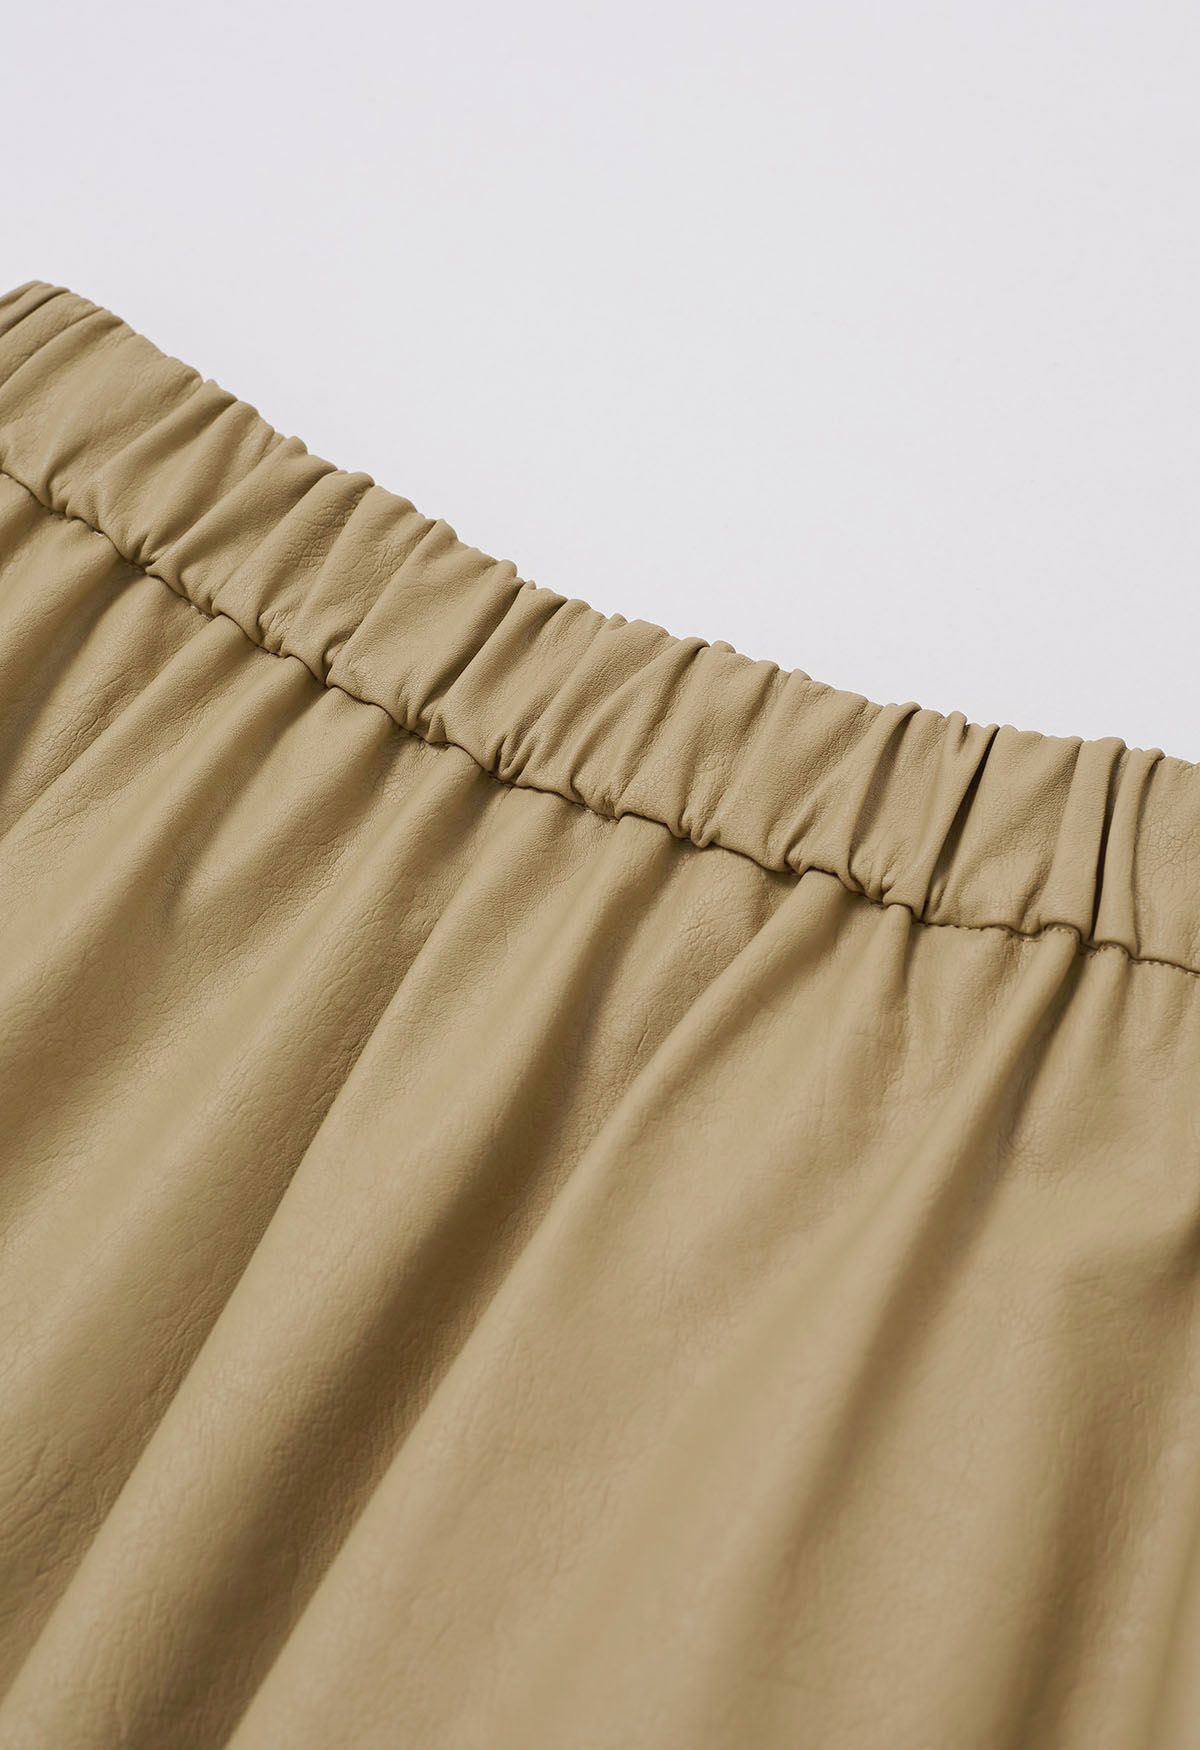 Falda midi plisada de piel sintética en color caqui